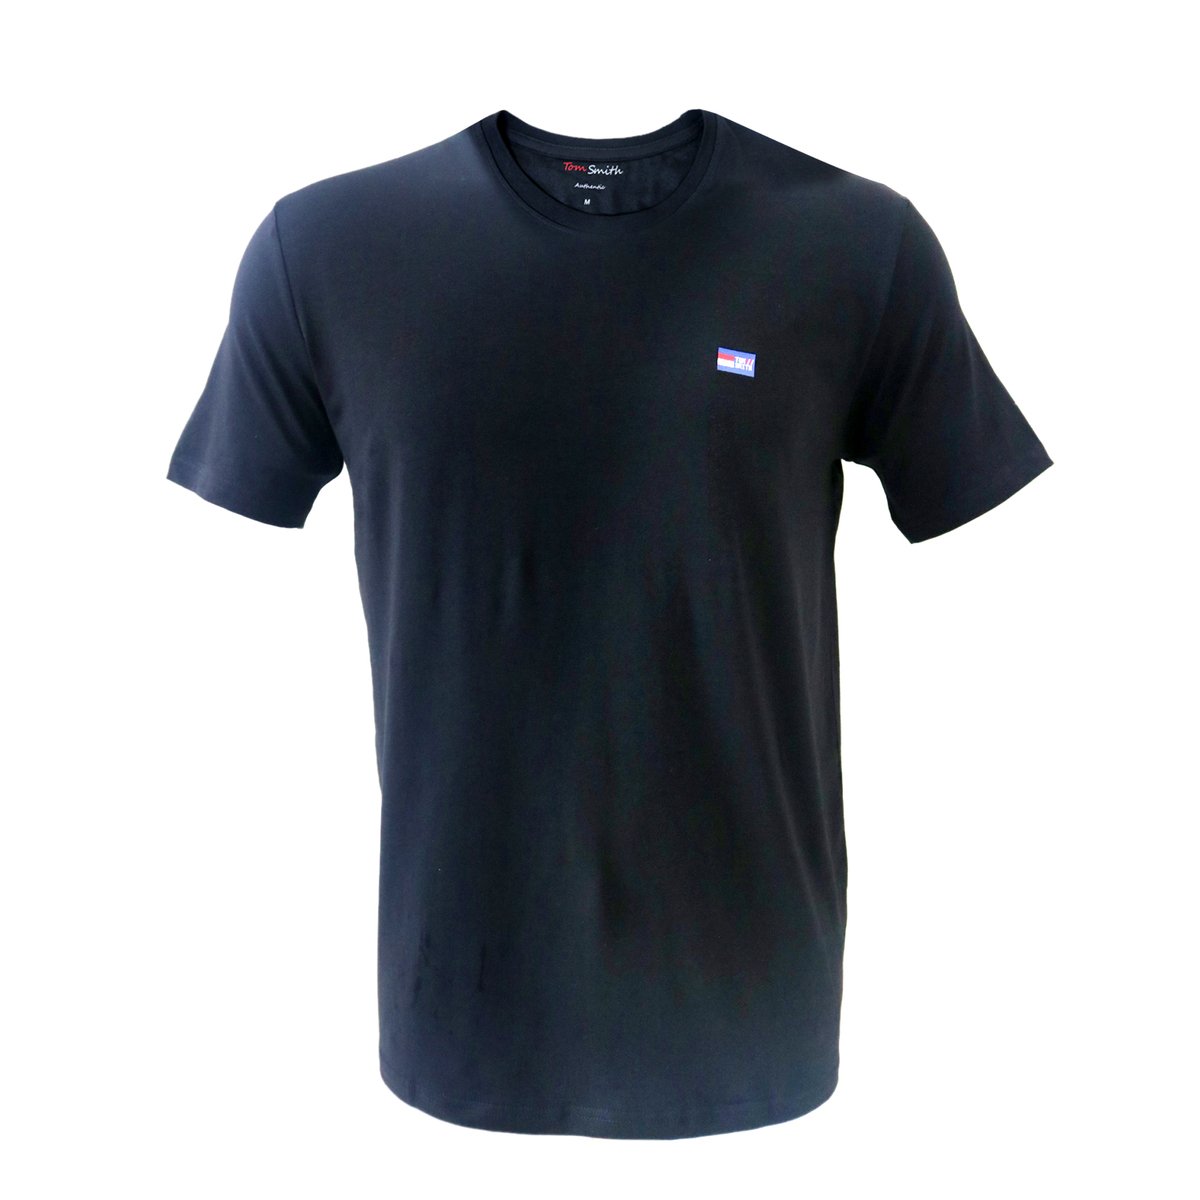 Tom Smith Basic Round Neck T-Shirt Black - L